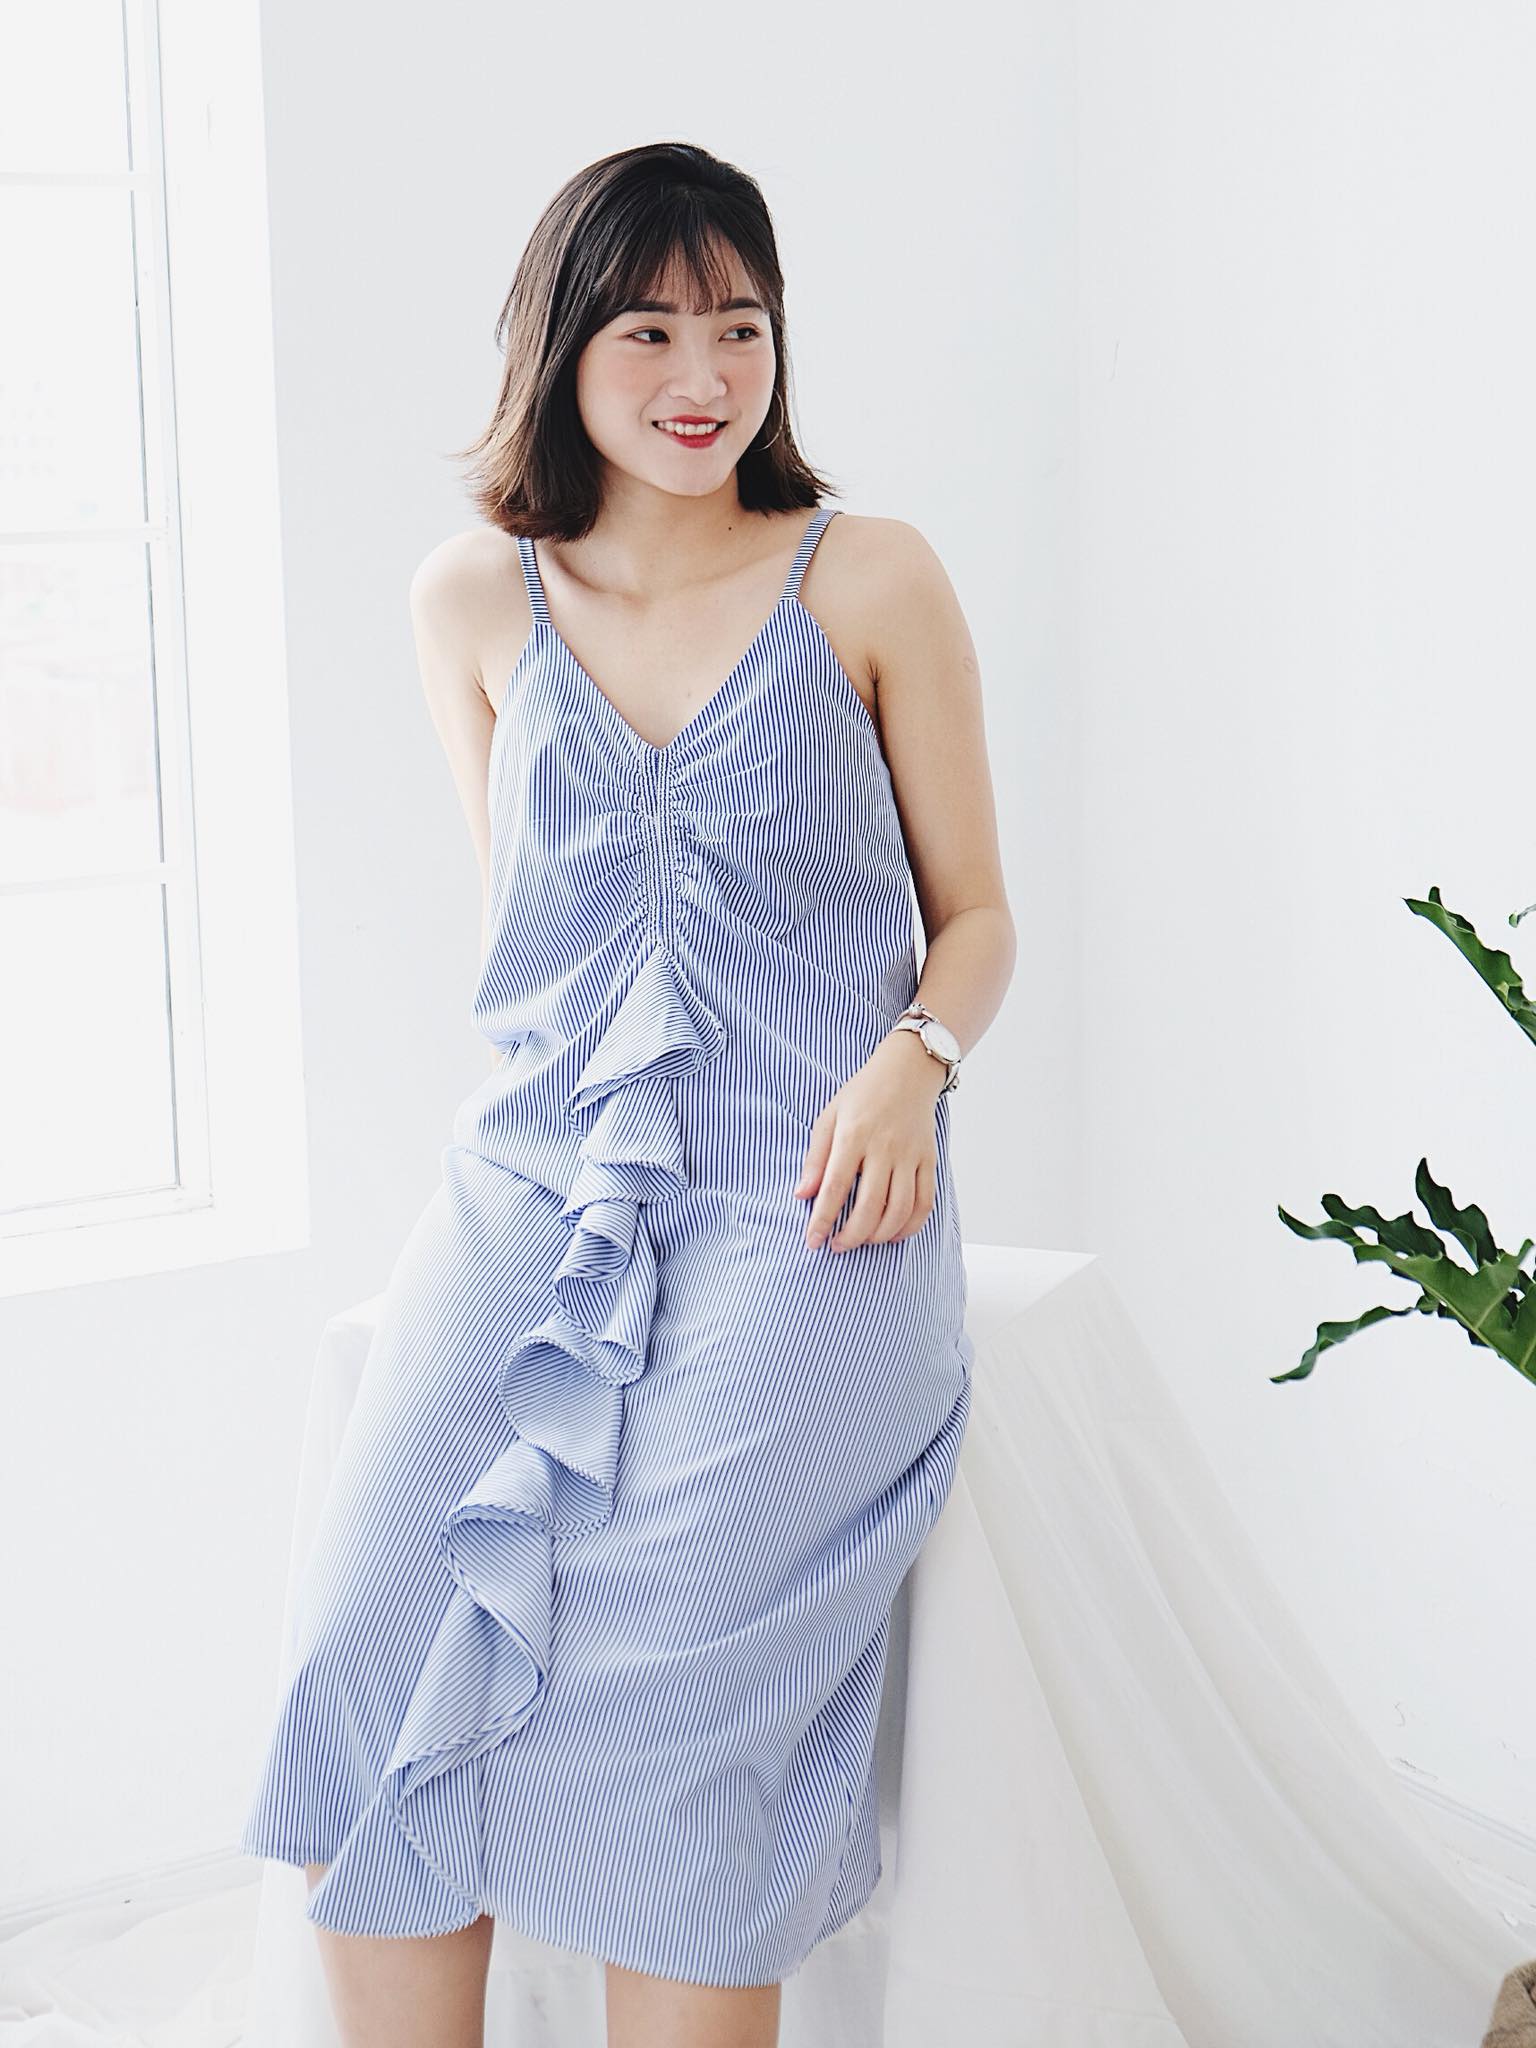 Top n shop bán váy đầm đẹp nhất ở Hà Nội